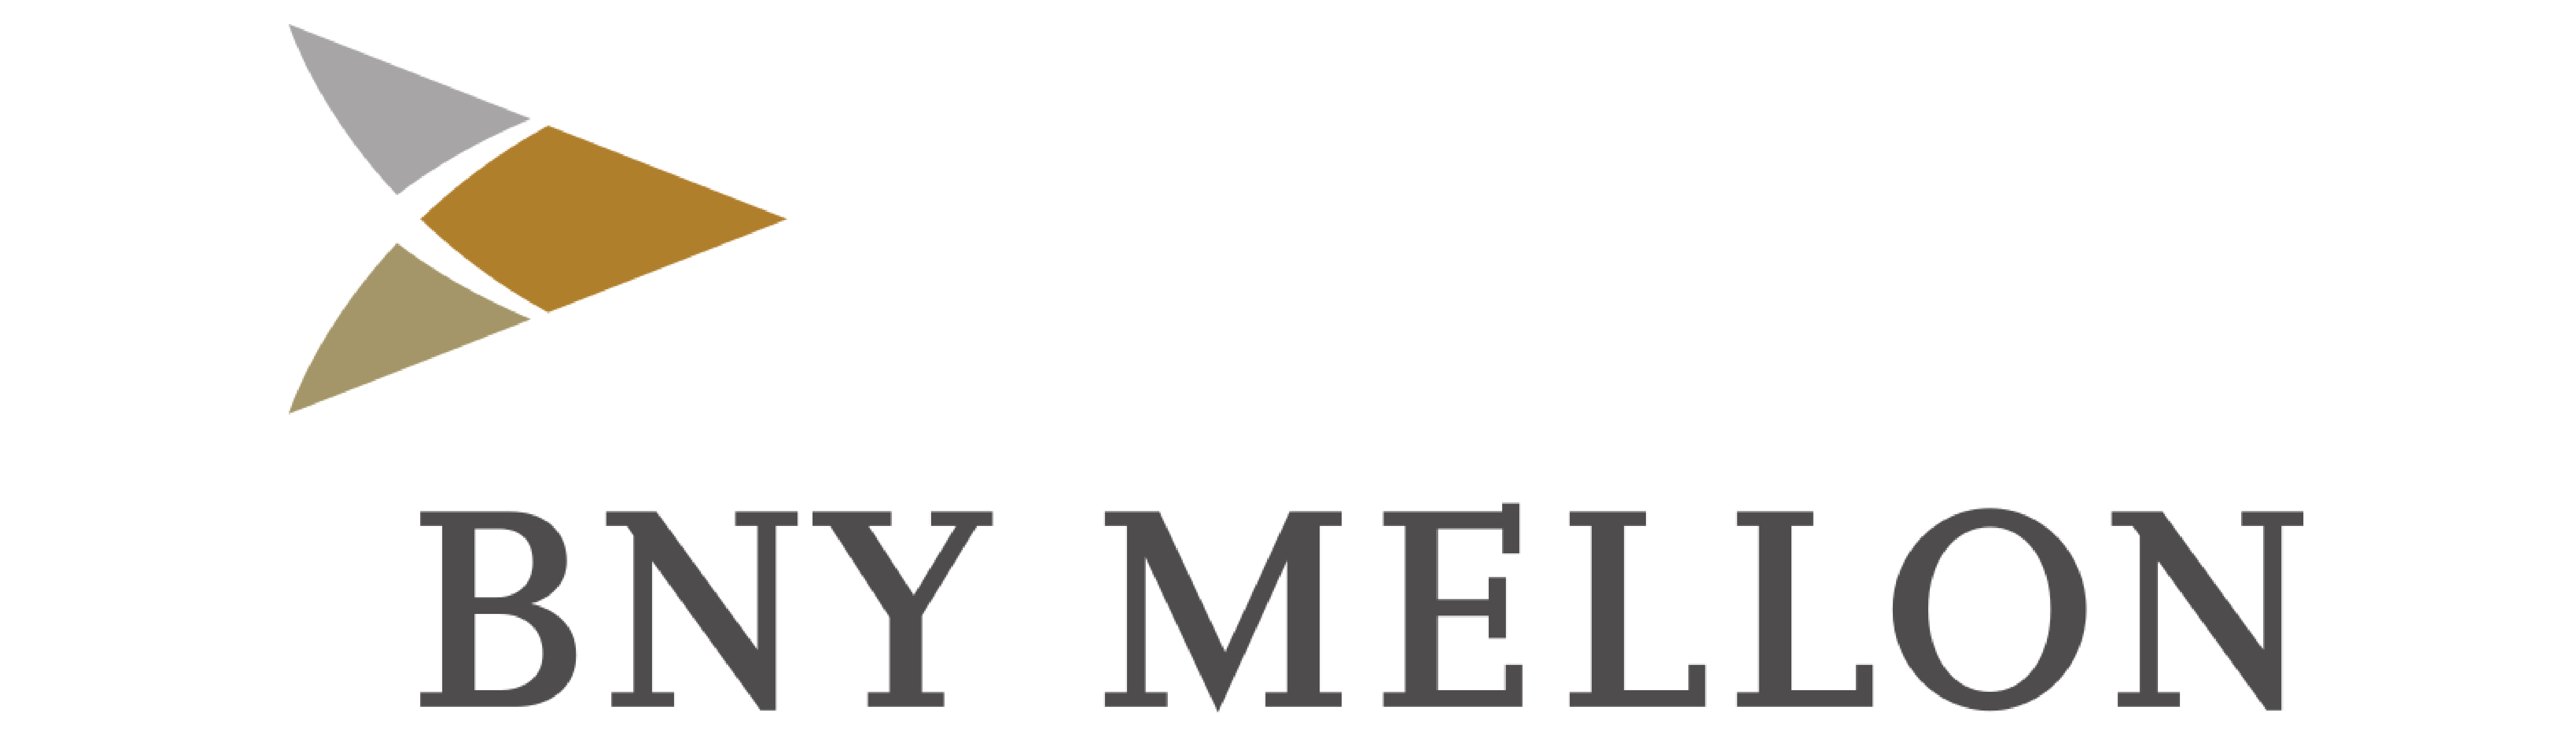 The Bank of New York Mellon logo